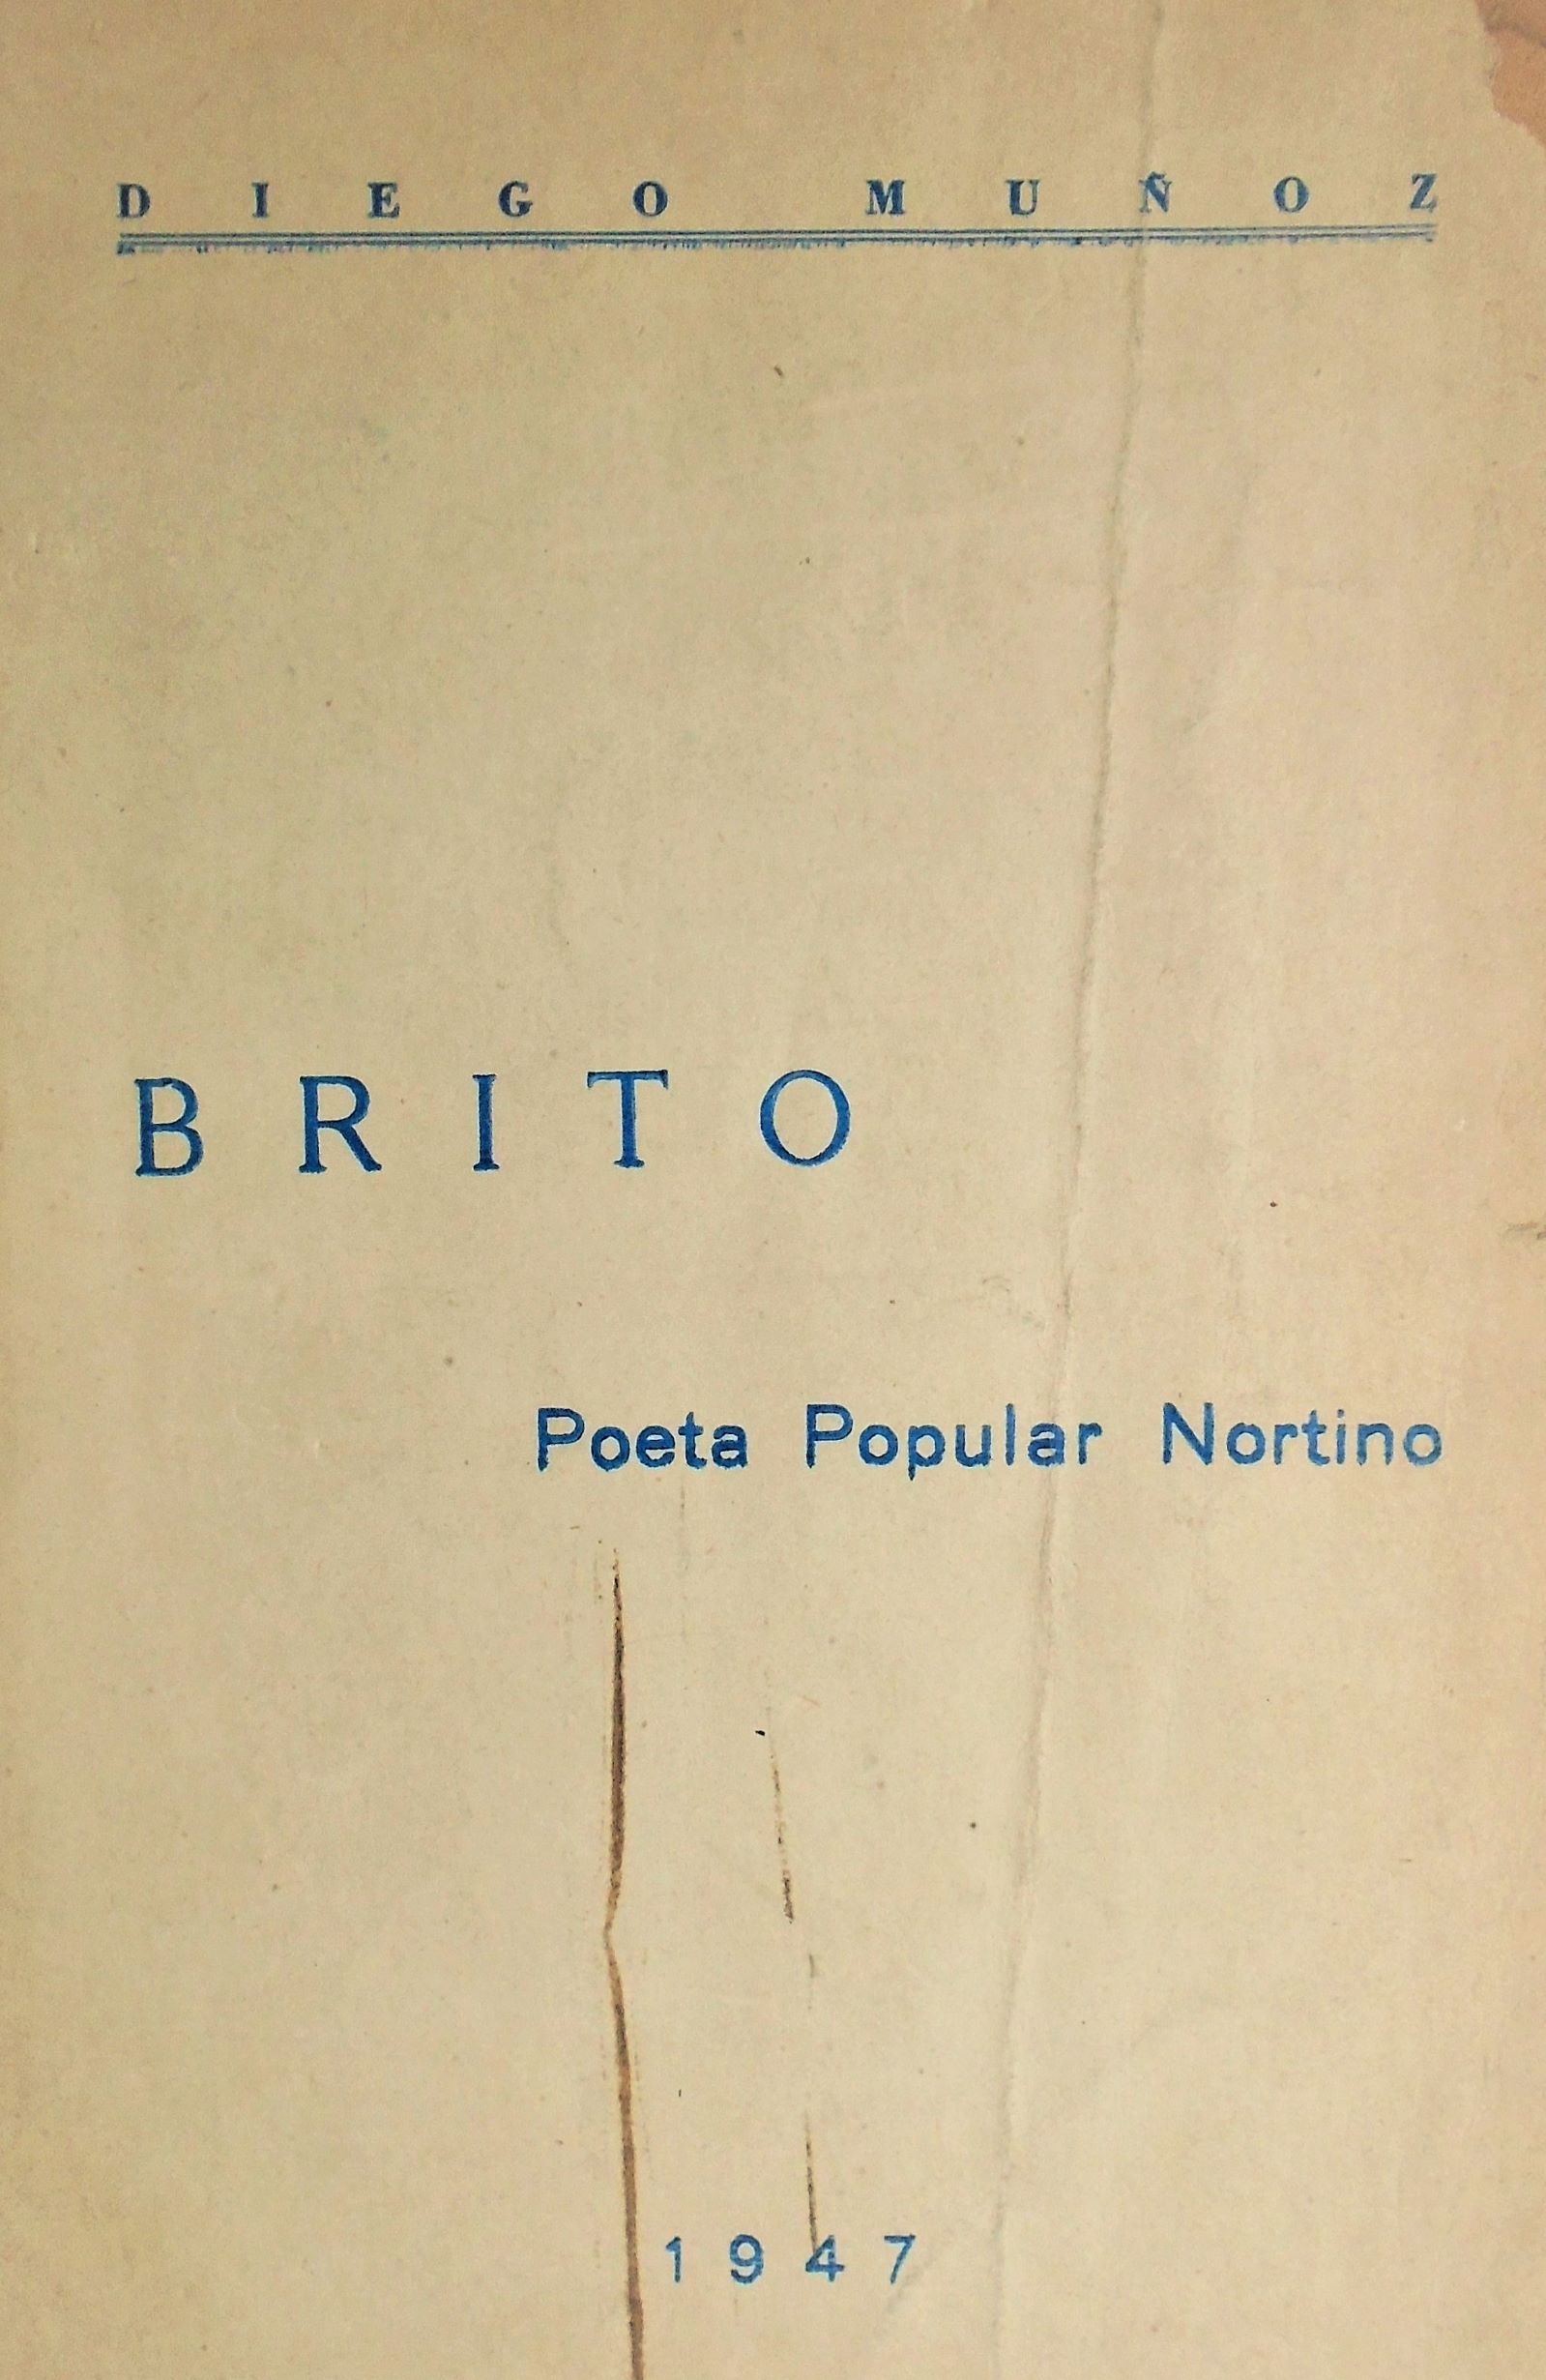 Diego Muñoz - Brito Poeta Popular Nortino